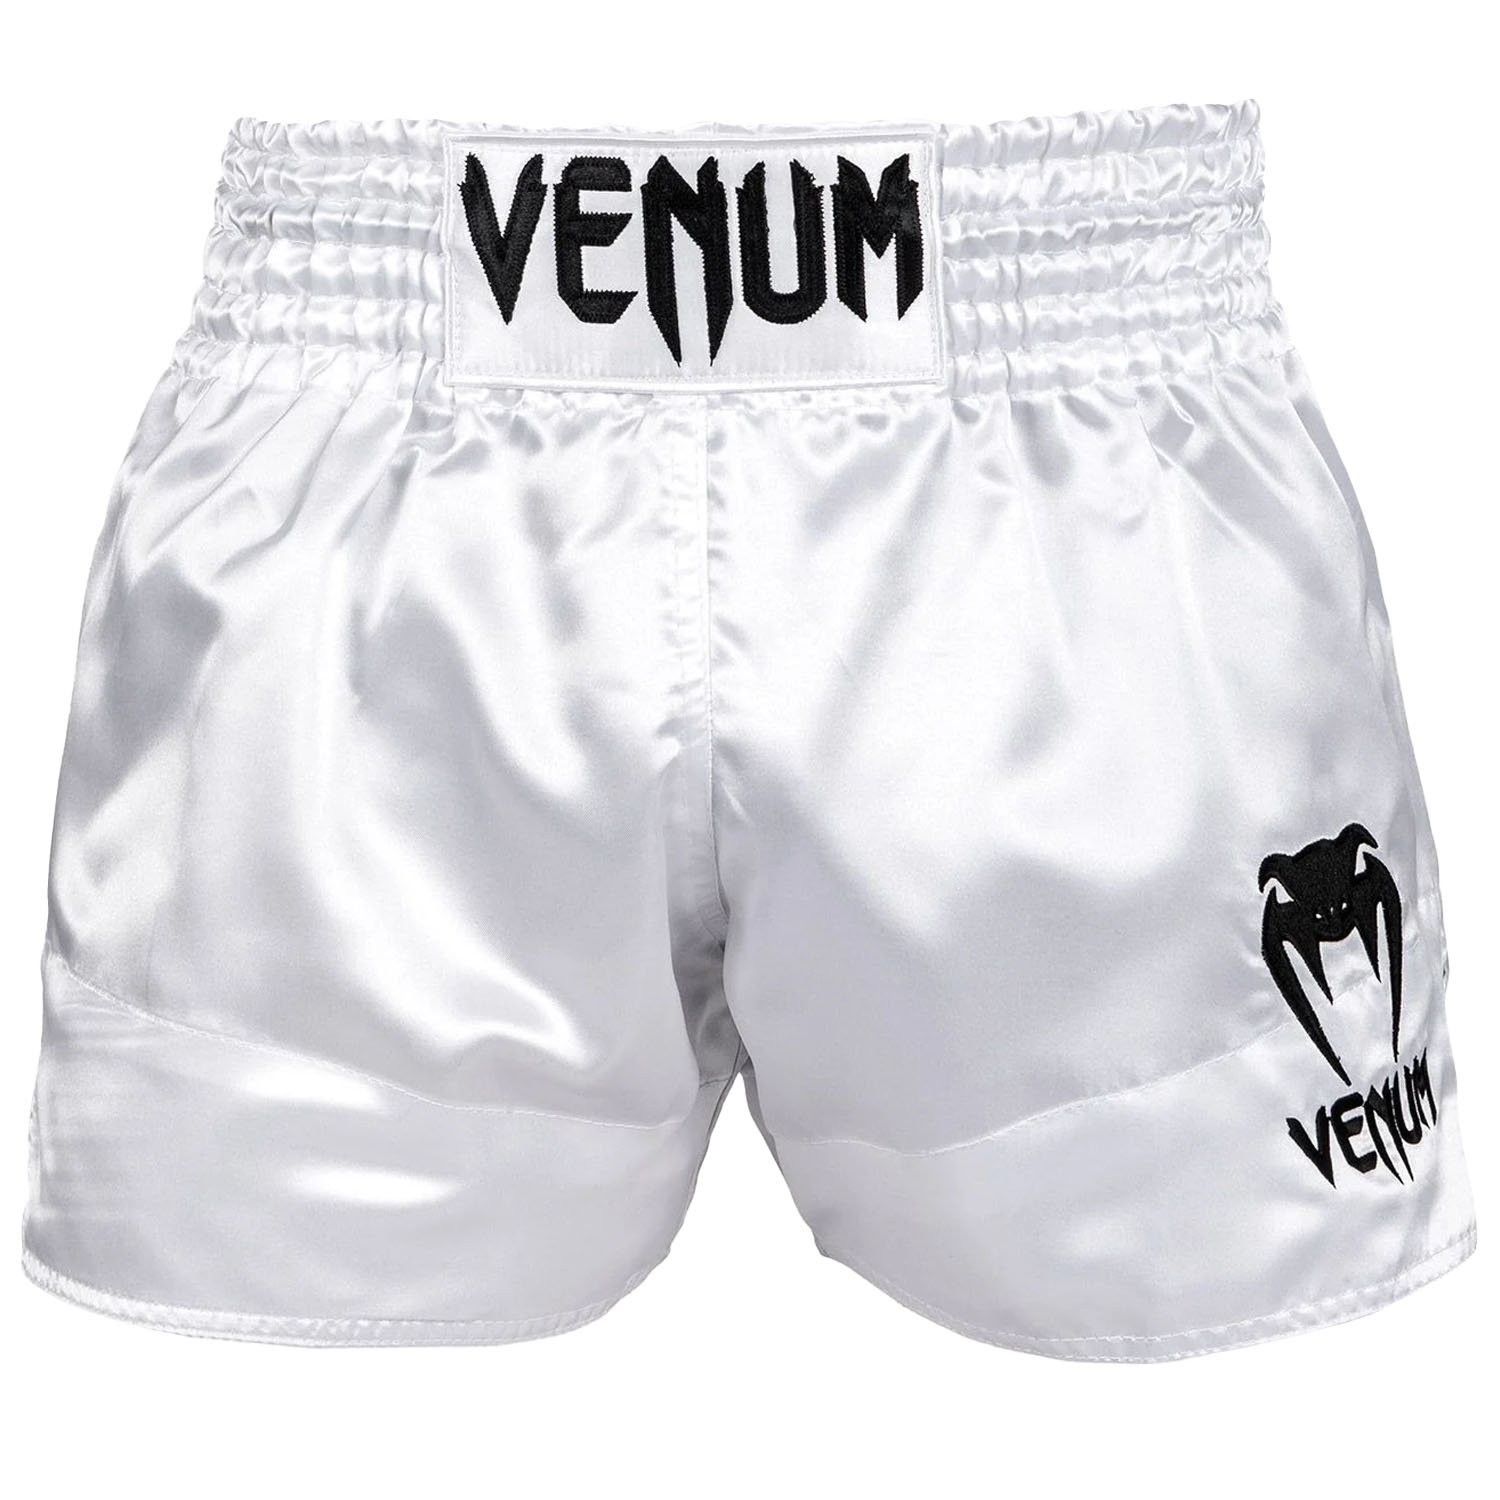 VENUM Muay Thai Shorts, Classic, weiß-schwarz, M